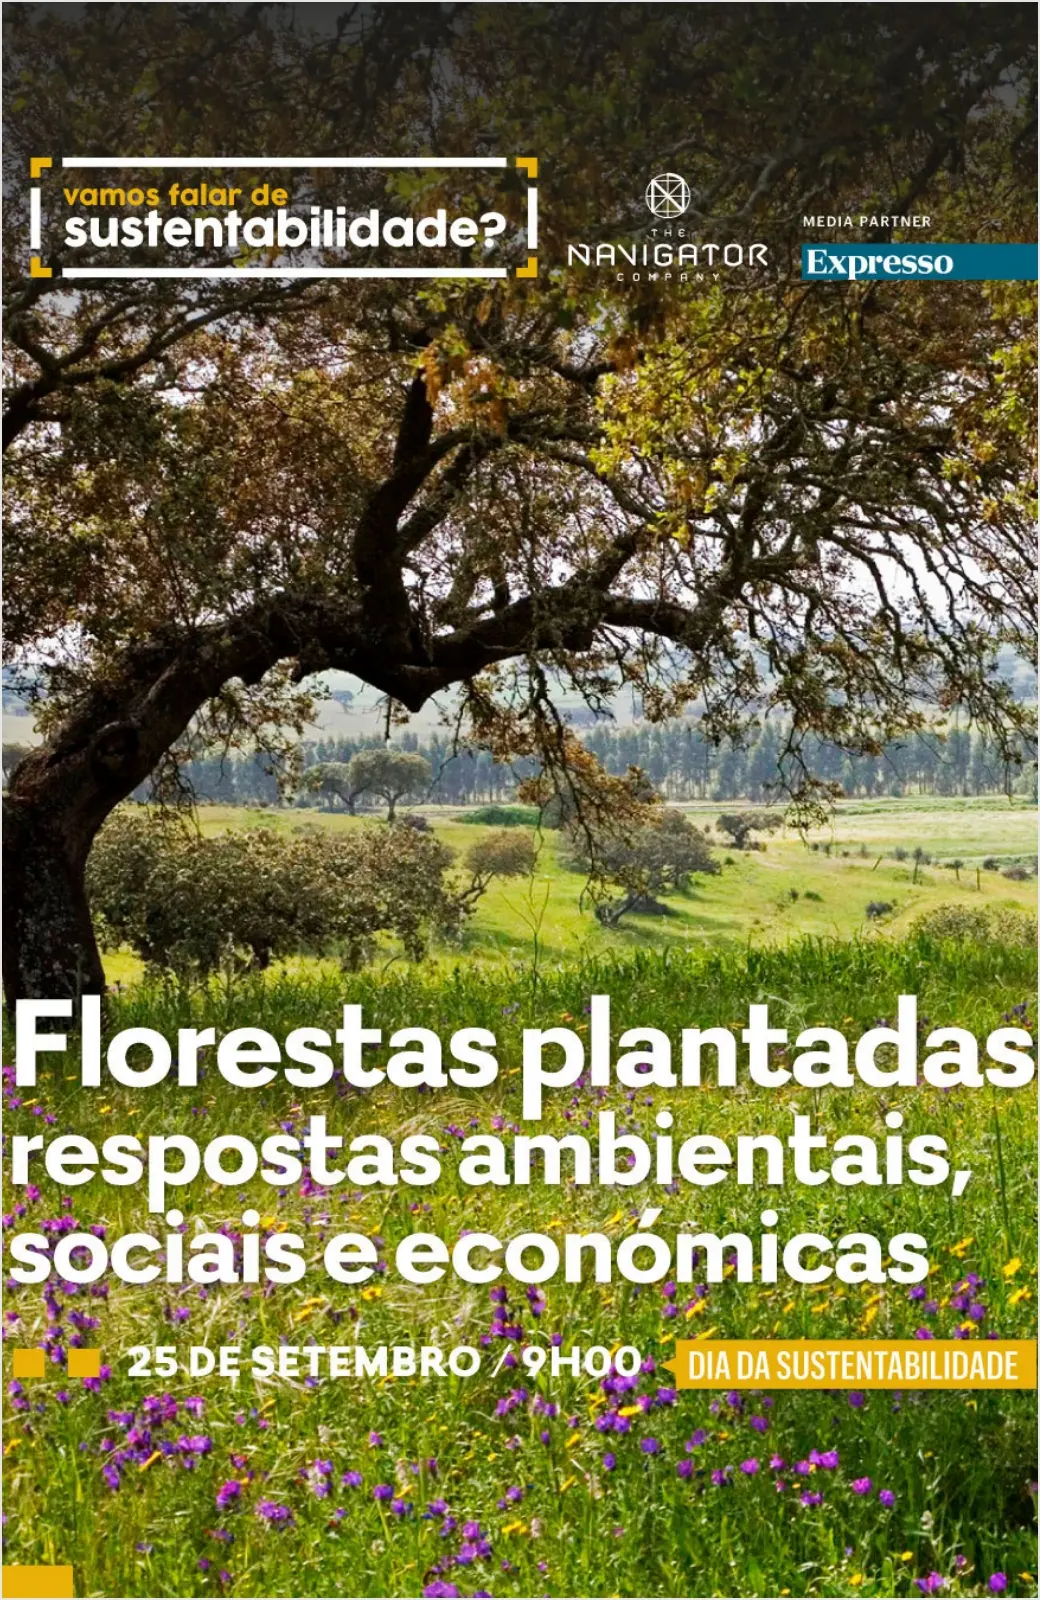 3ª Conferência Navigator/Expresso - Florestas plantadas: Respostas ambientais, sociais e económicas